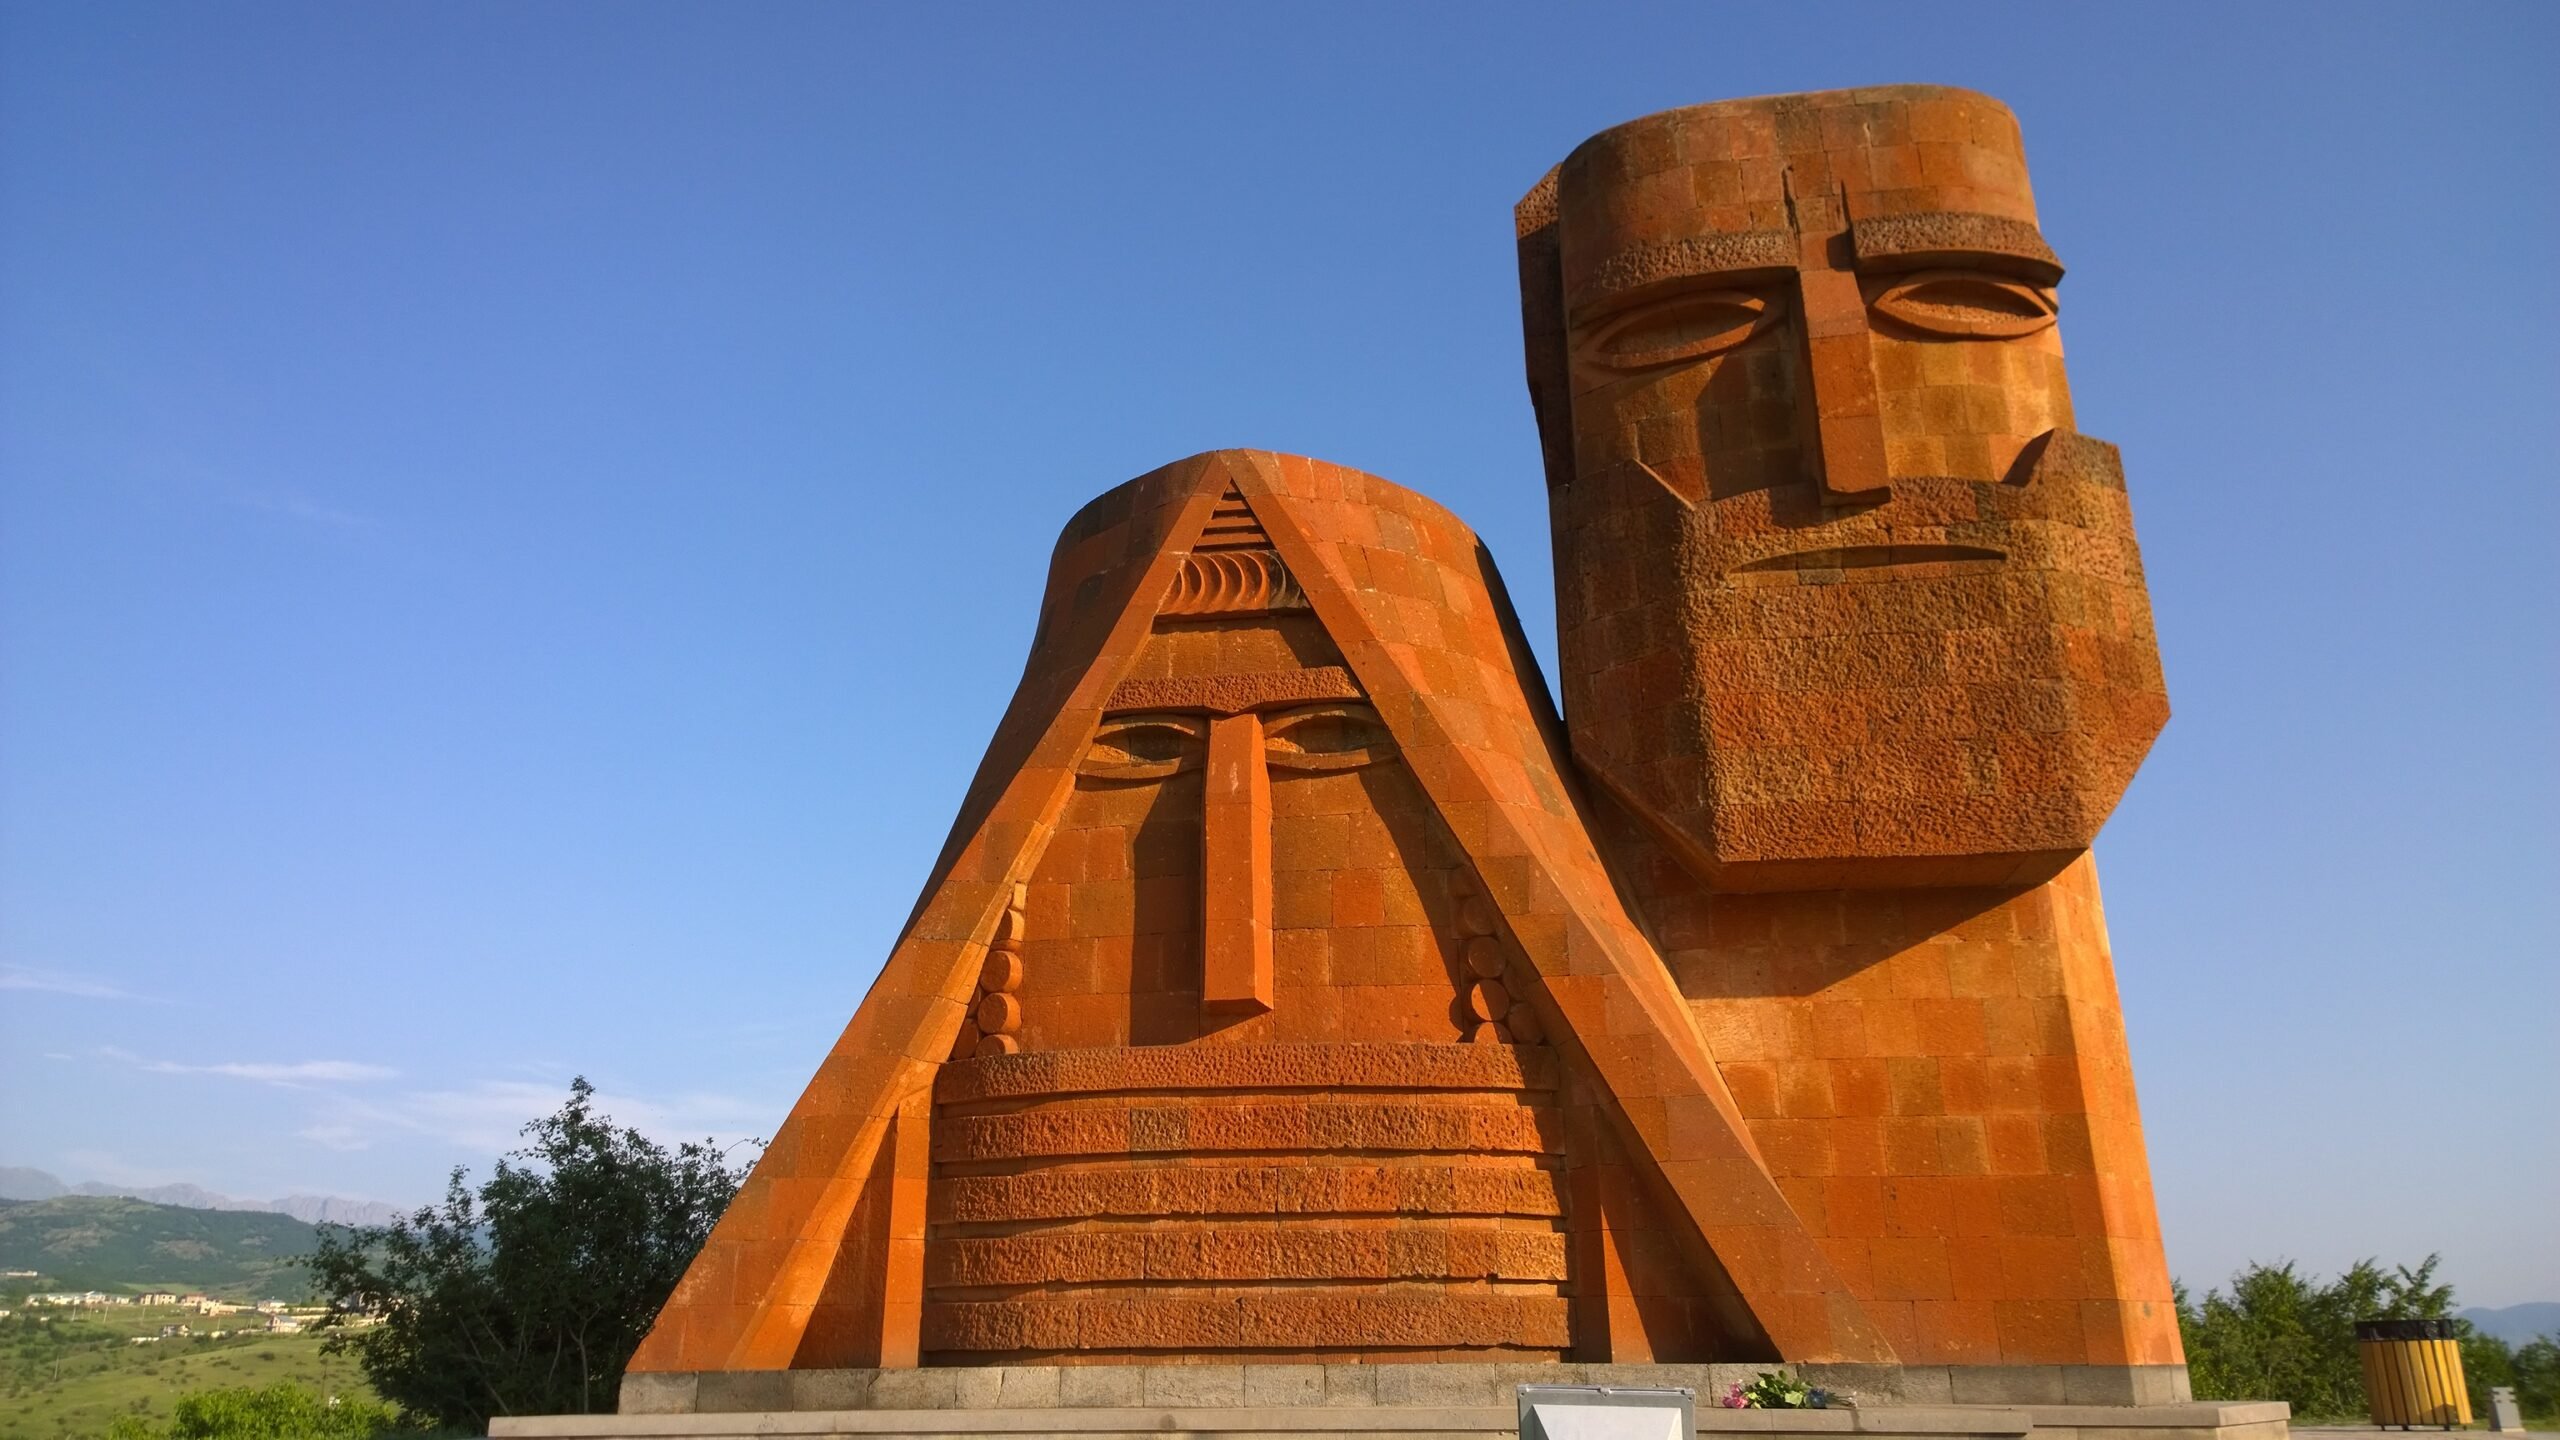 56 տարի առաջ՝ 1967 թվականի նոյեմբերի 1-ին, Ստեփանակերտում տեղադրվեց «Մե՛նք ենք մեր լեռները» հուշարձանը